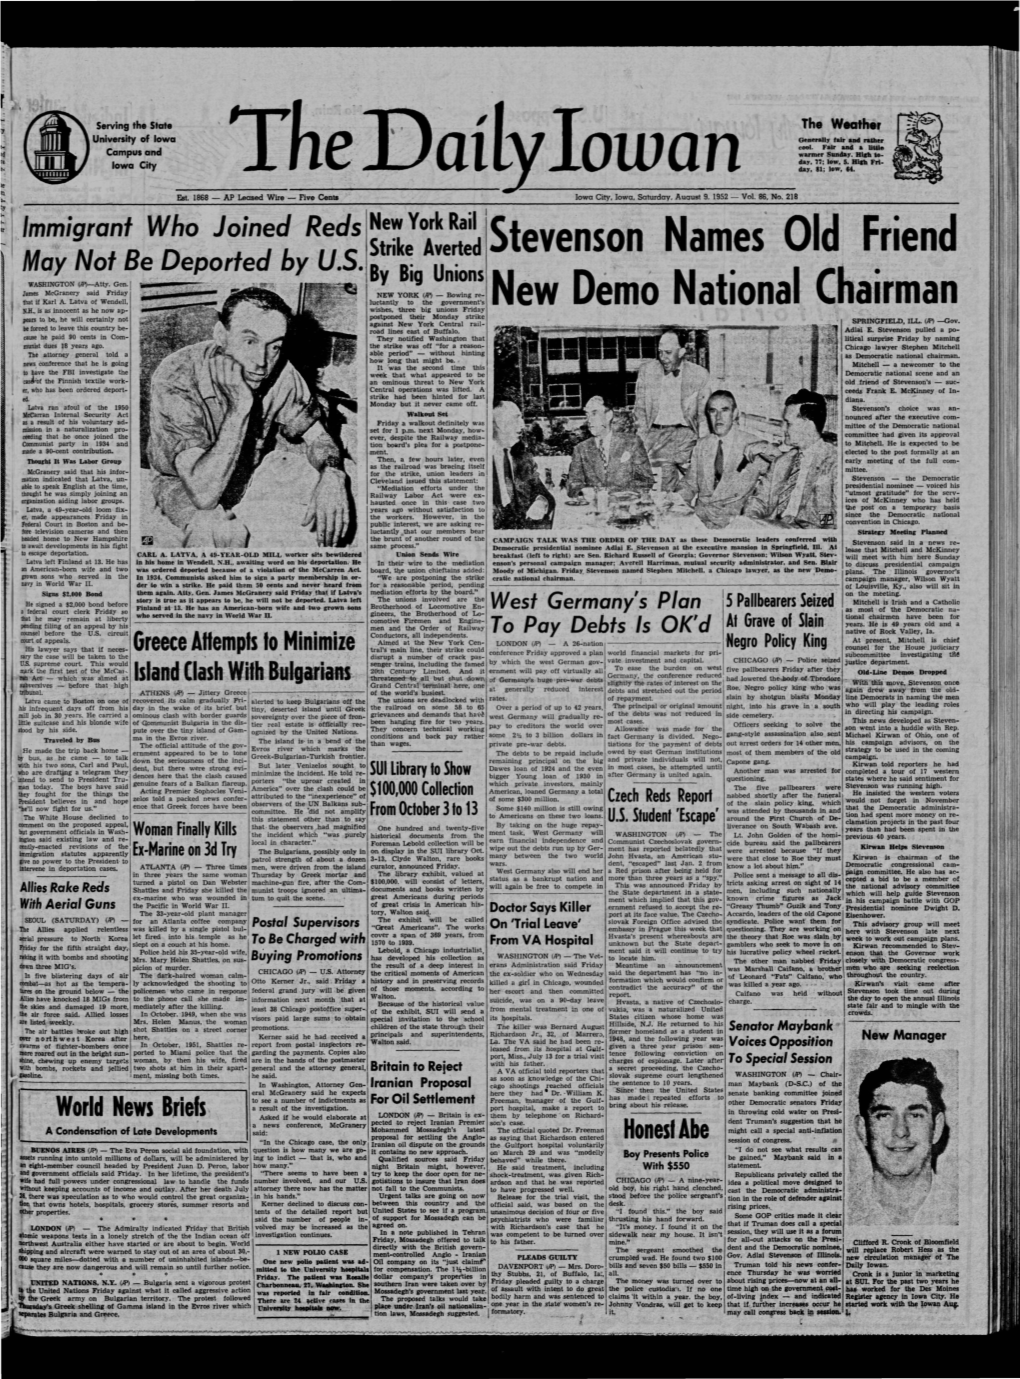 Daily Iowan (Iowa City, Iowa), 1952-08-09